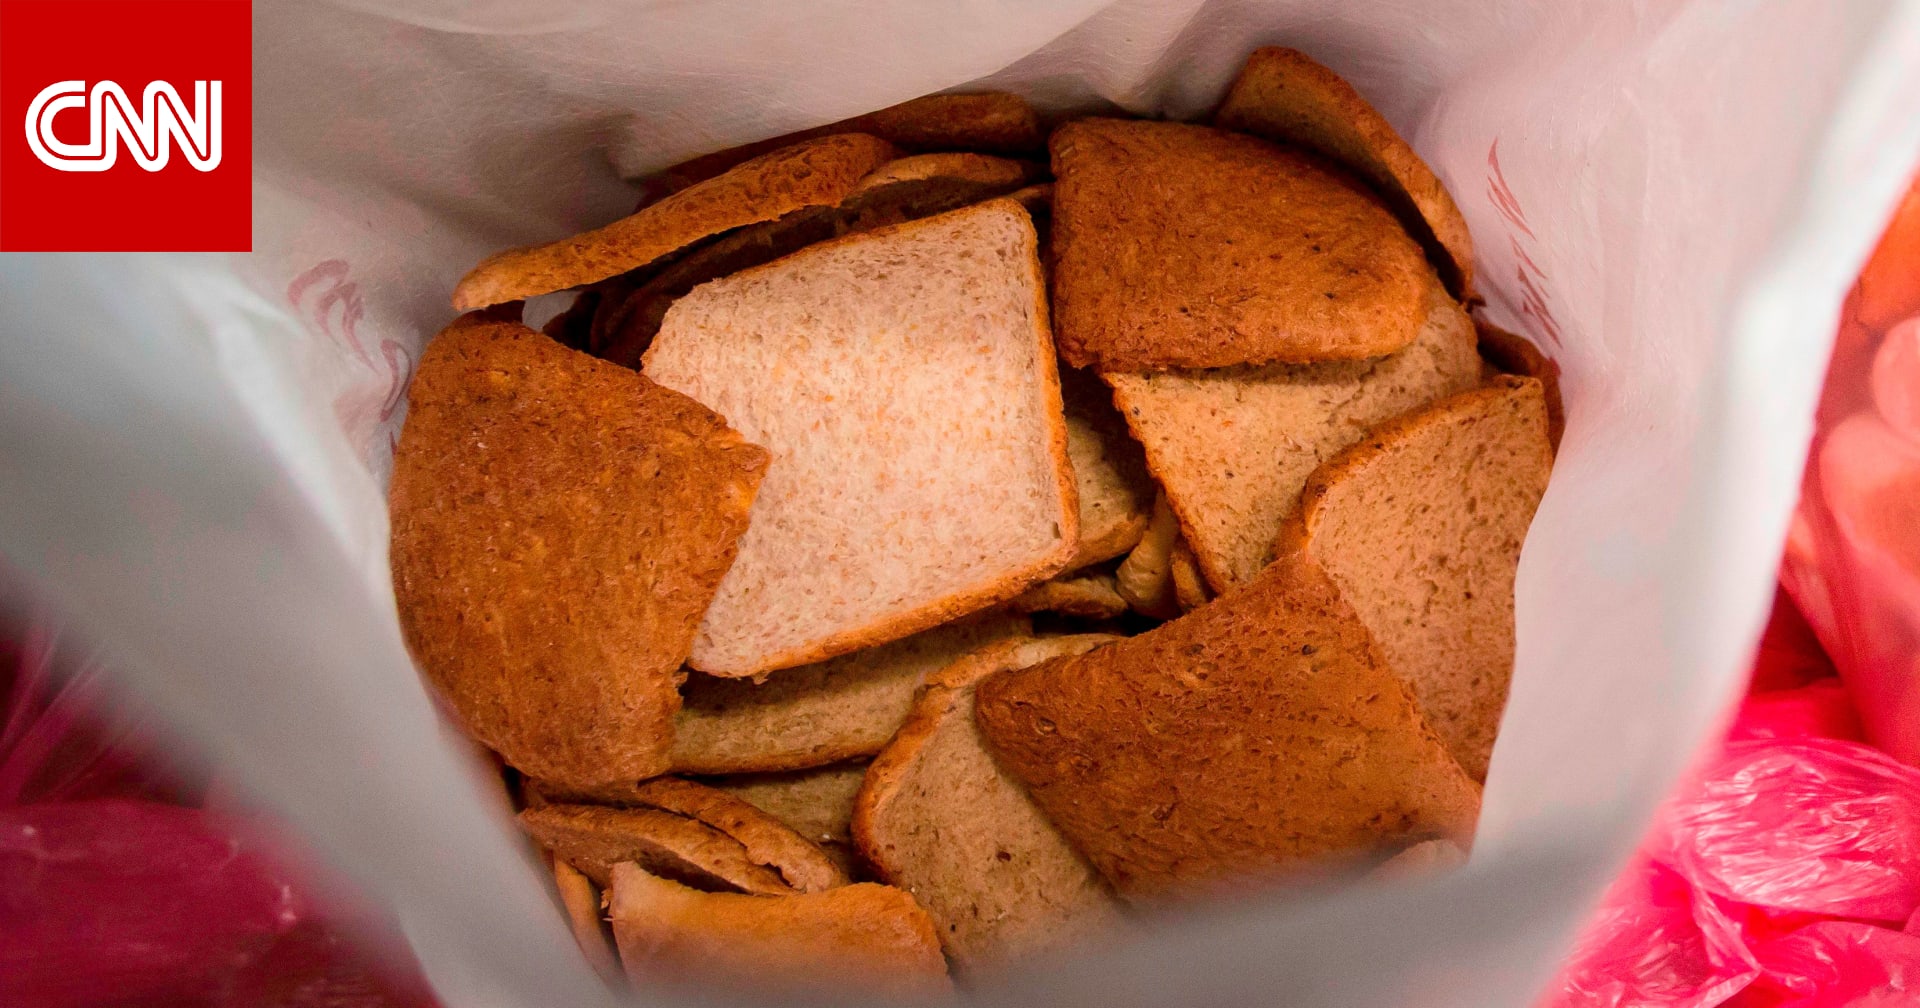 أجزاء من فئران بشرائح خبز "توست" تدفع بهذه الشركة لاستدعاء المنتج وفتح تحقيق بكيفية حدوث ذلك 